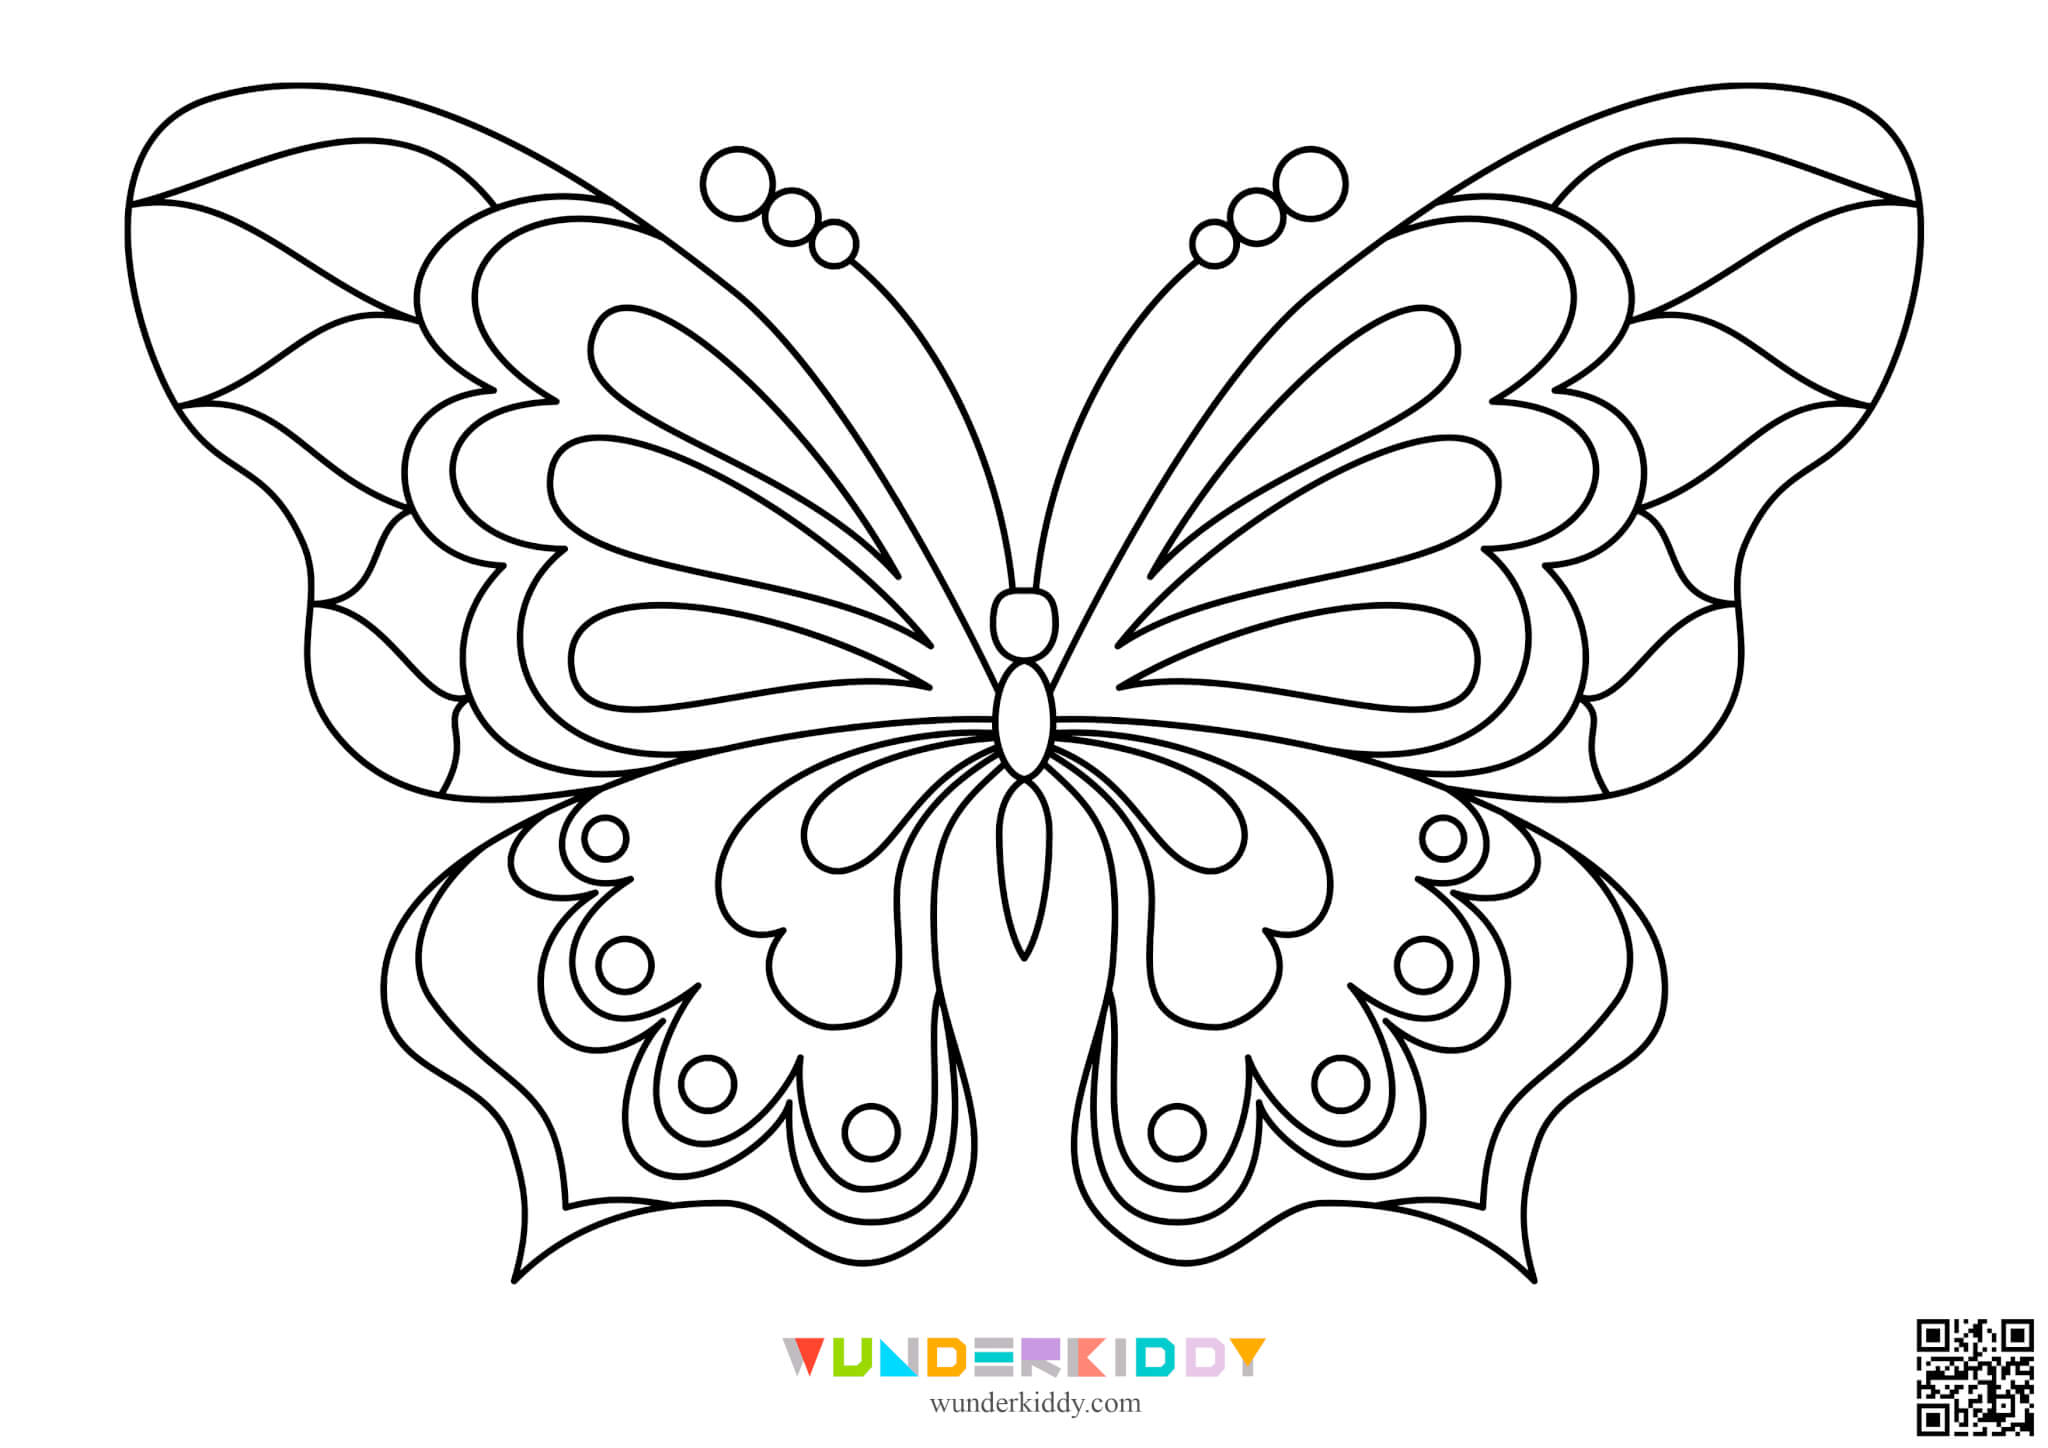 Шаблолоны бабочек для творчества - Изображение 3